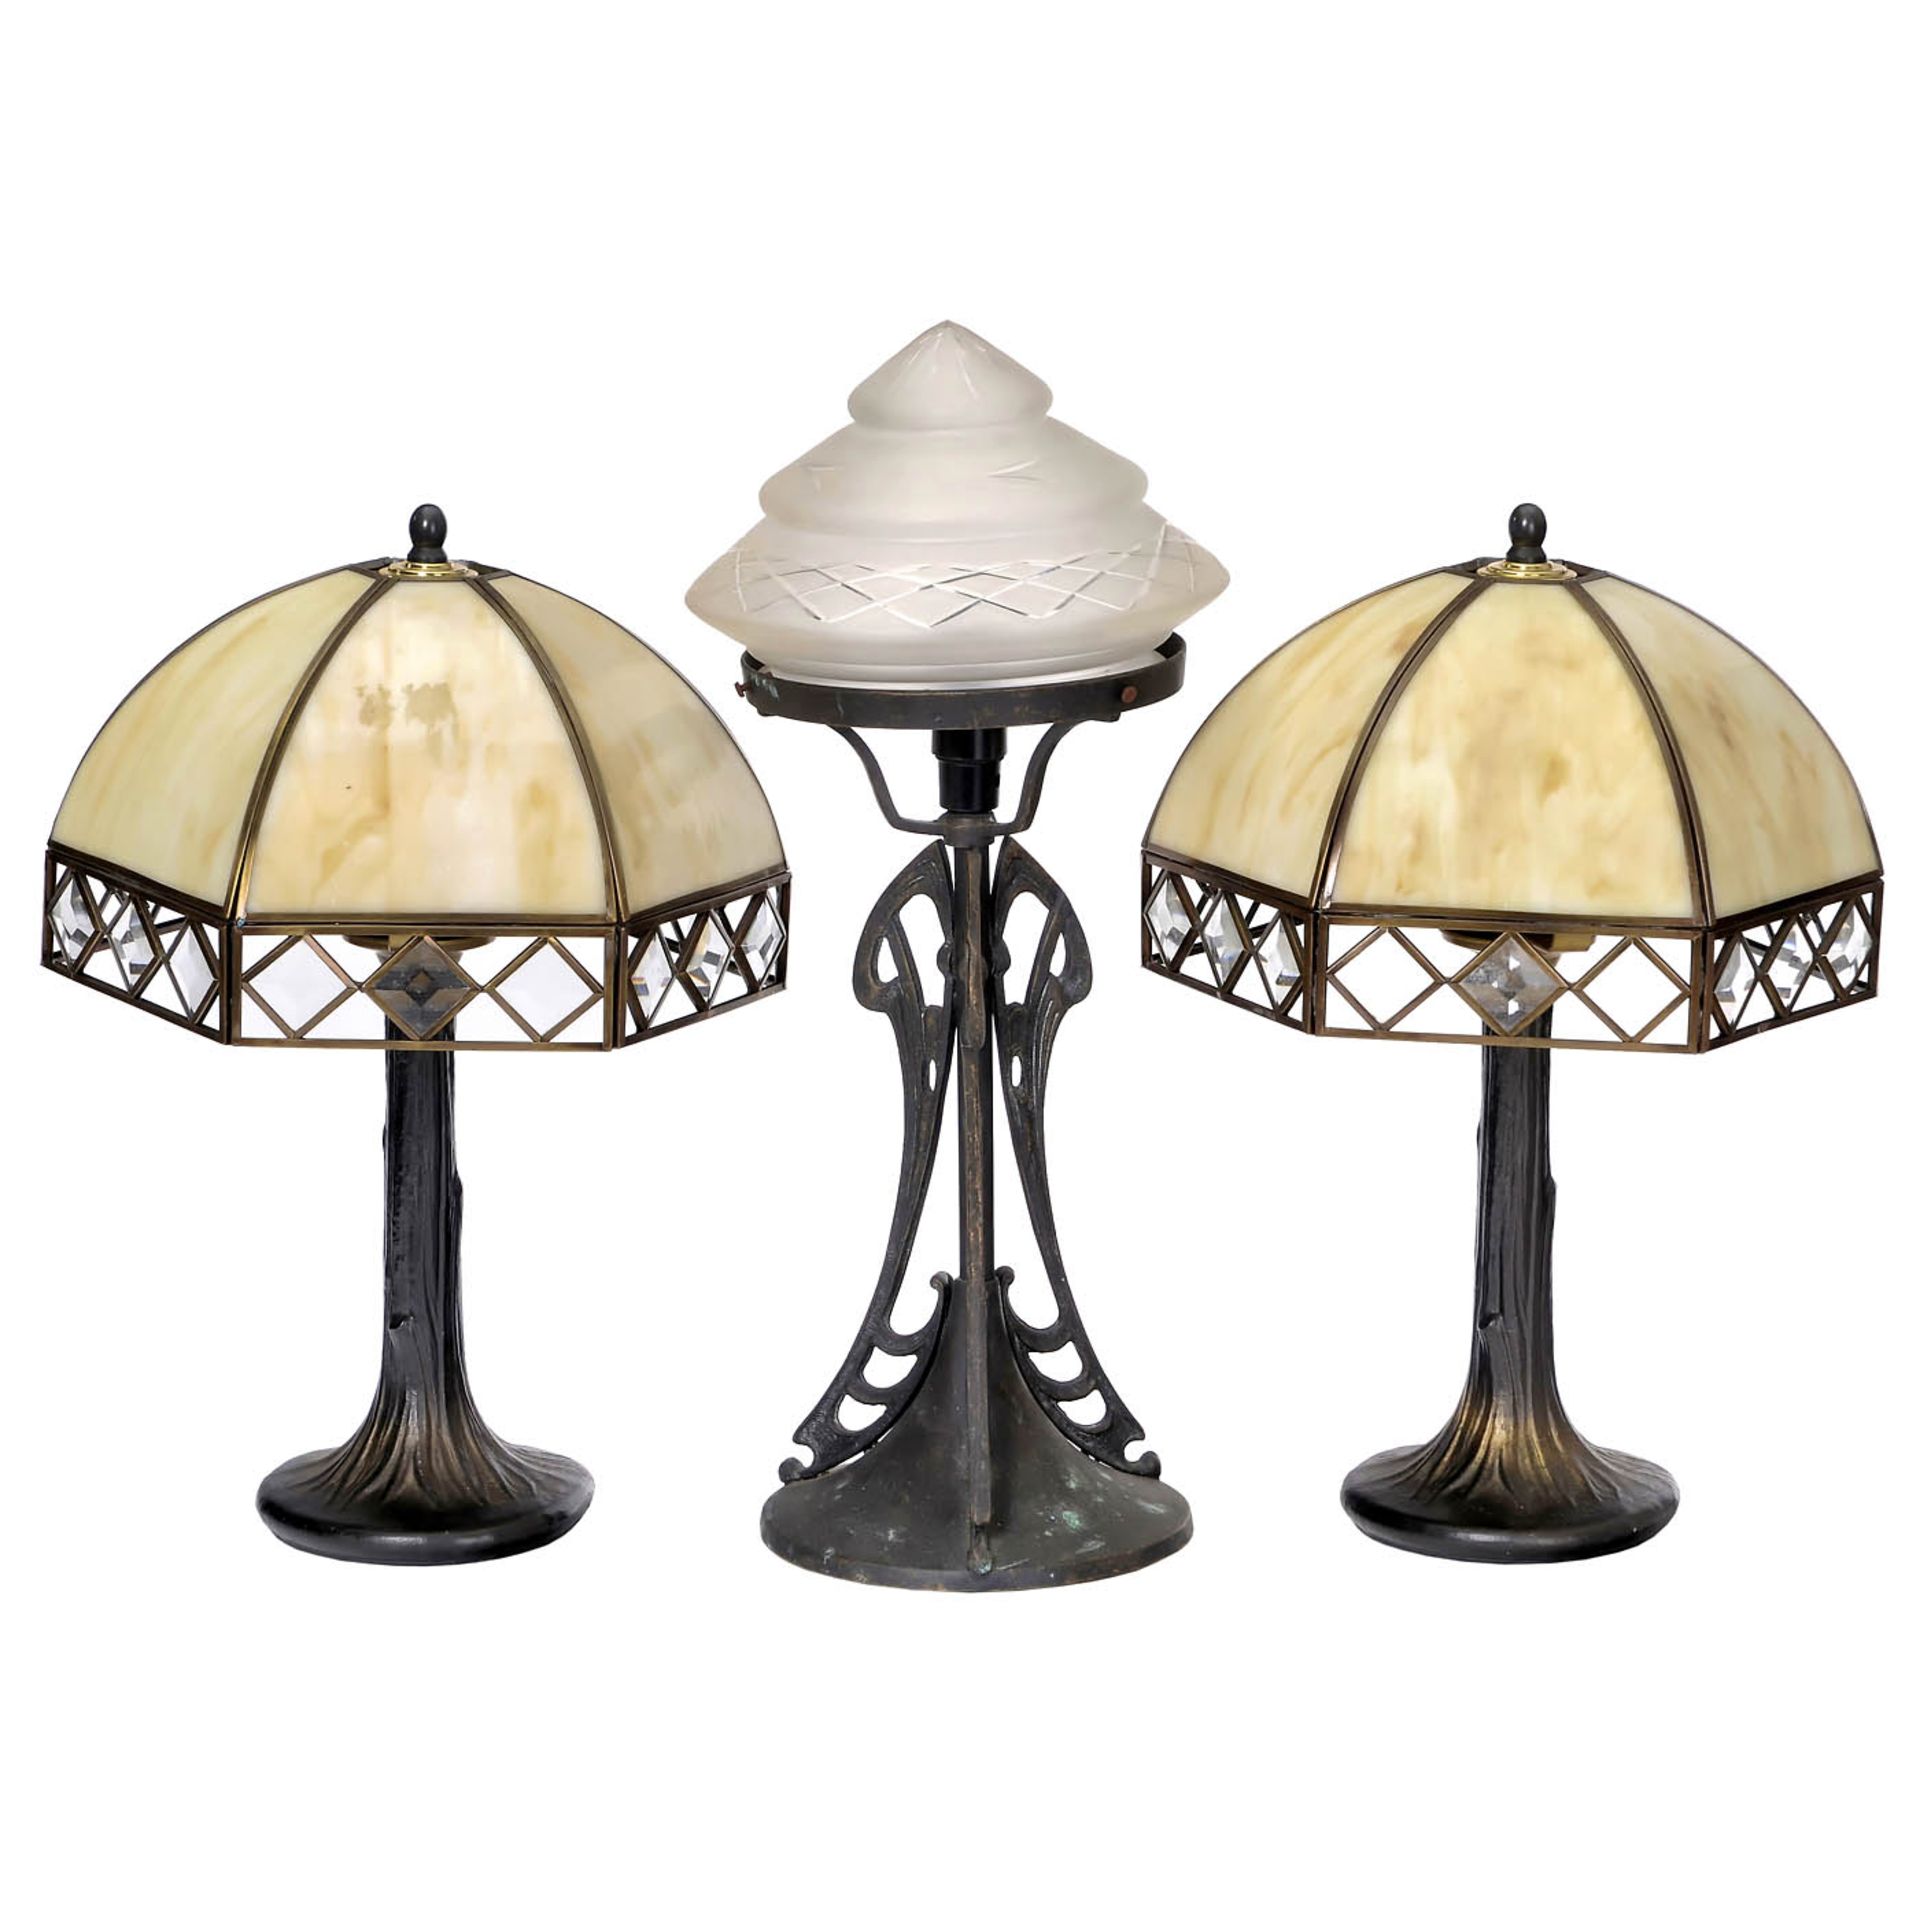 6 Art-Nouveau and Art-Deco-Style Table Lamps, c. 1980 - Bild 4 aus 4